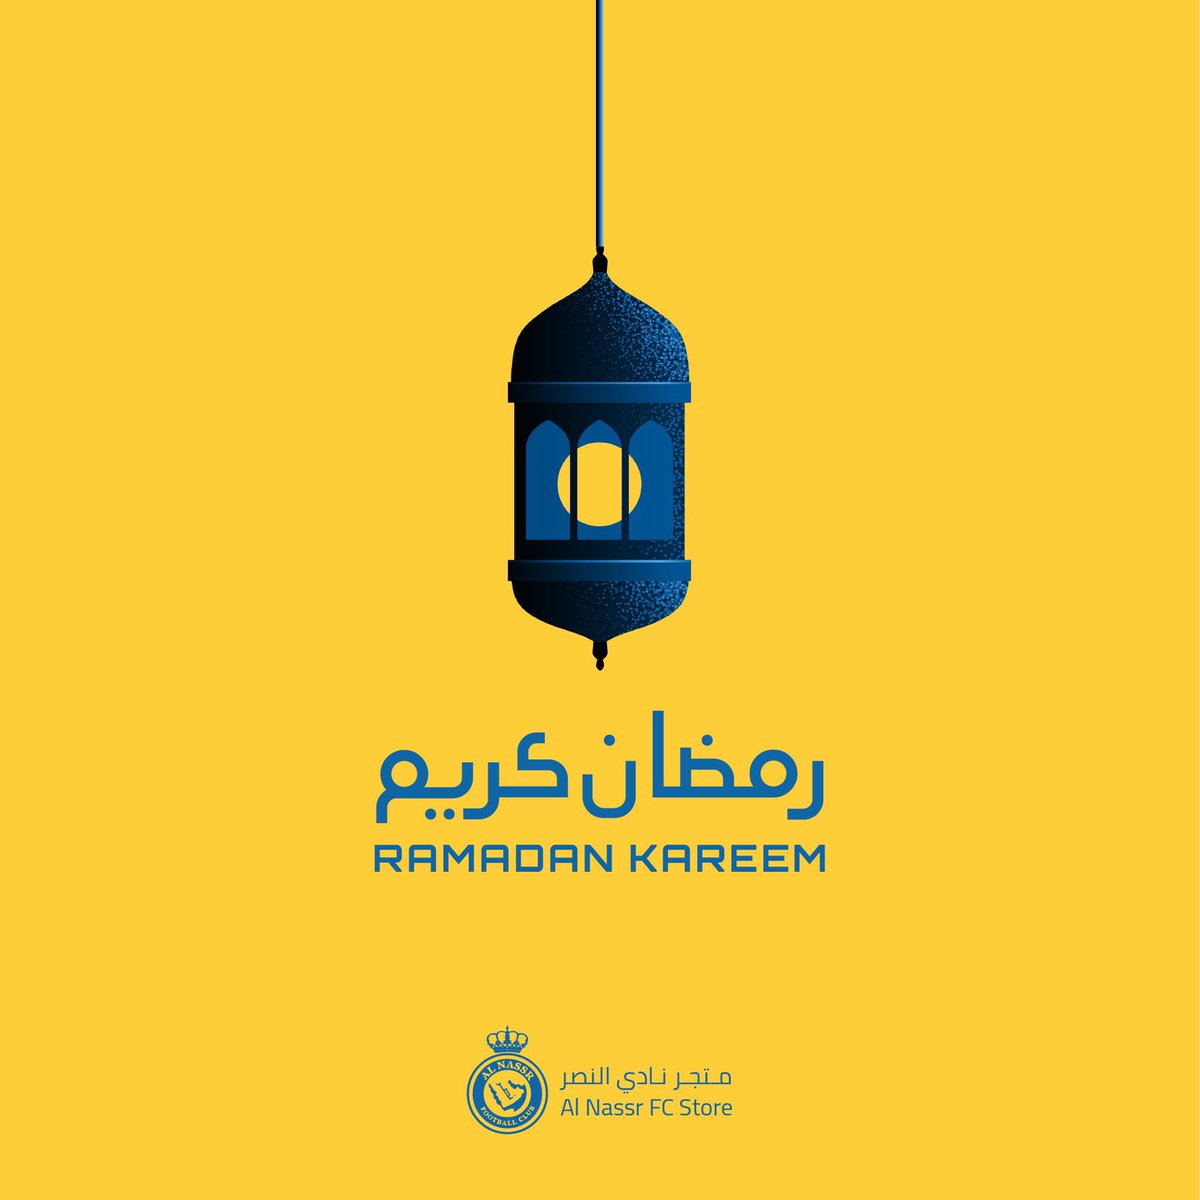 نهنِّئكم بحلول شهر رمضان المبارك، تقبل الله من الجميع صالح الأعمال 💛 #رمضان_كريم